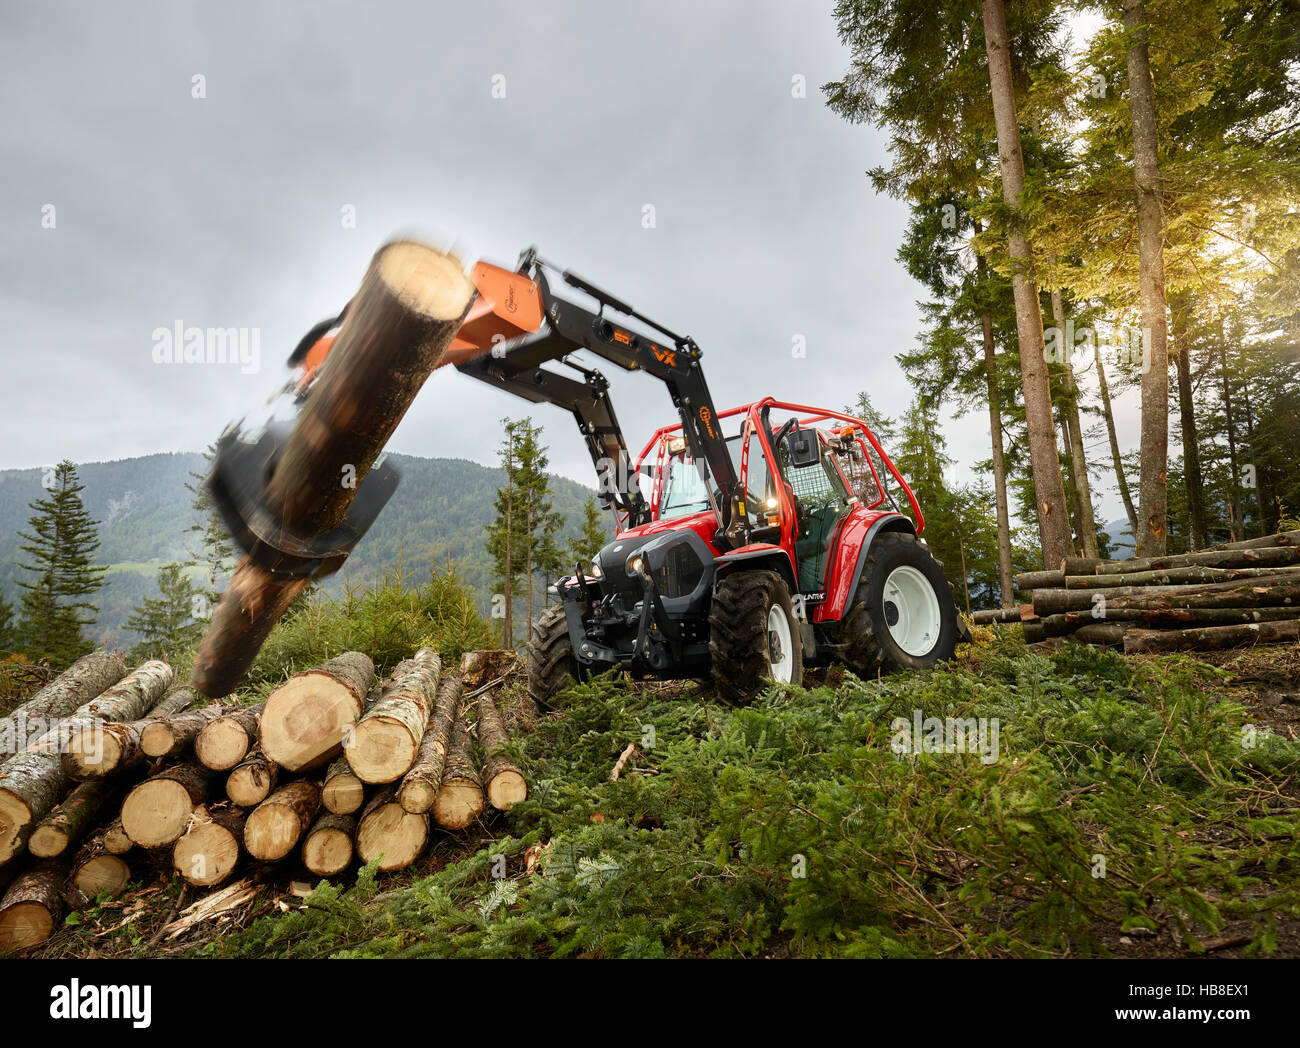 Forstwirtschaftliche Arbeiten, Traktor beweglichen Baumstamm auf Stapel Holz, Lindner Traktor, Kundl, Tirol, Österreich Stockfoto